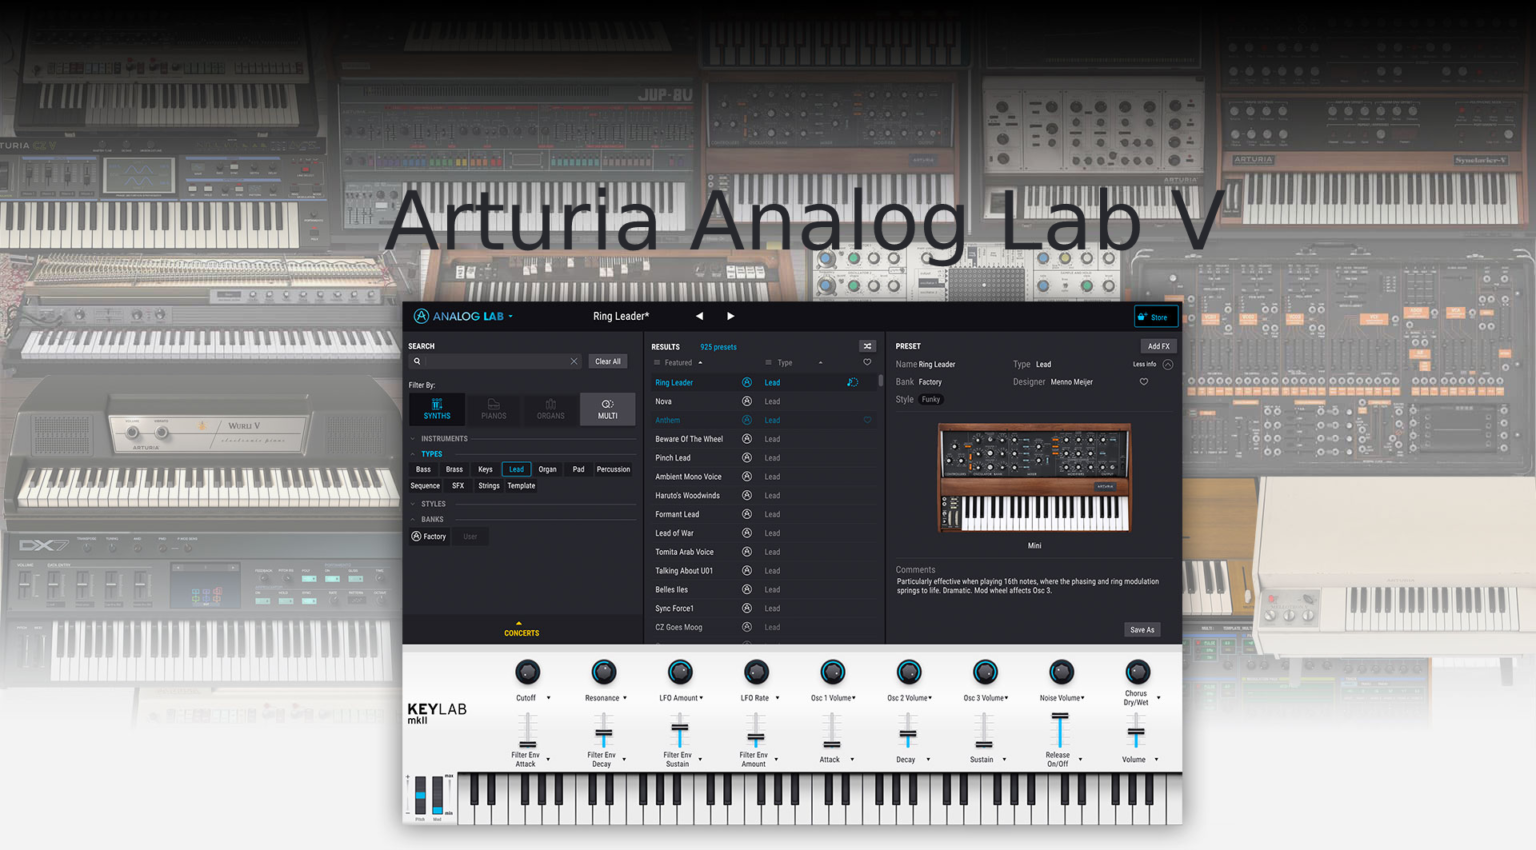 Arturia Analog lab V for ios instal free